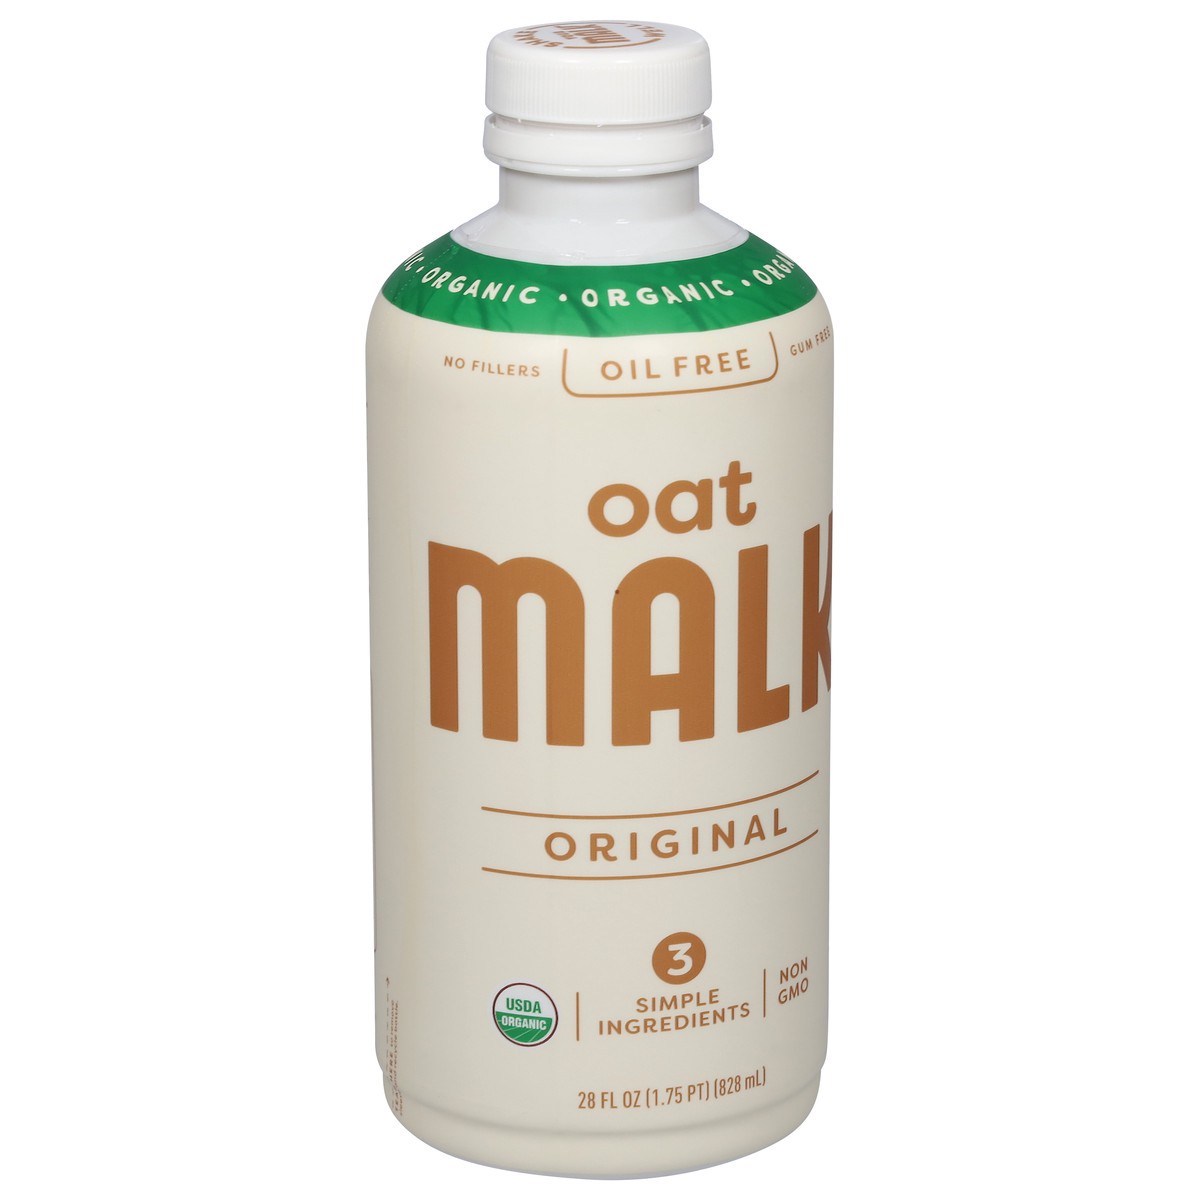 slide 7 of 11, Malk Organic Oil Free Original Oat Milk 28 fl oz, 28 fl oz